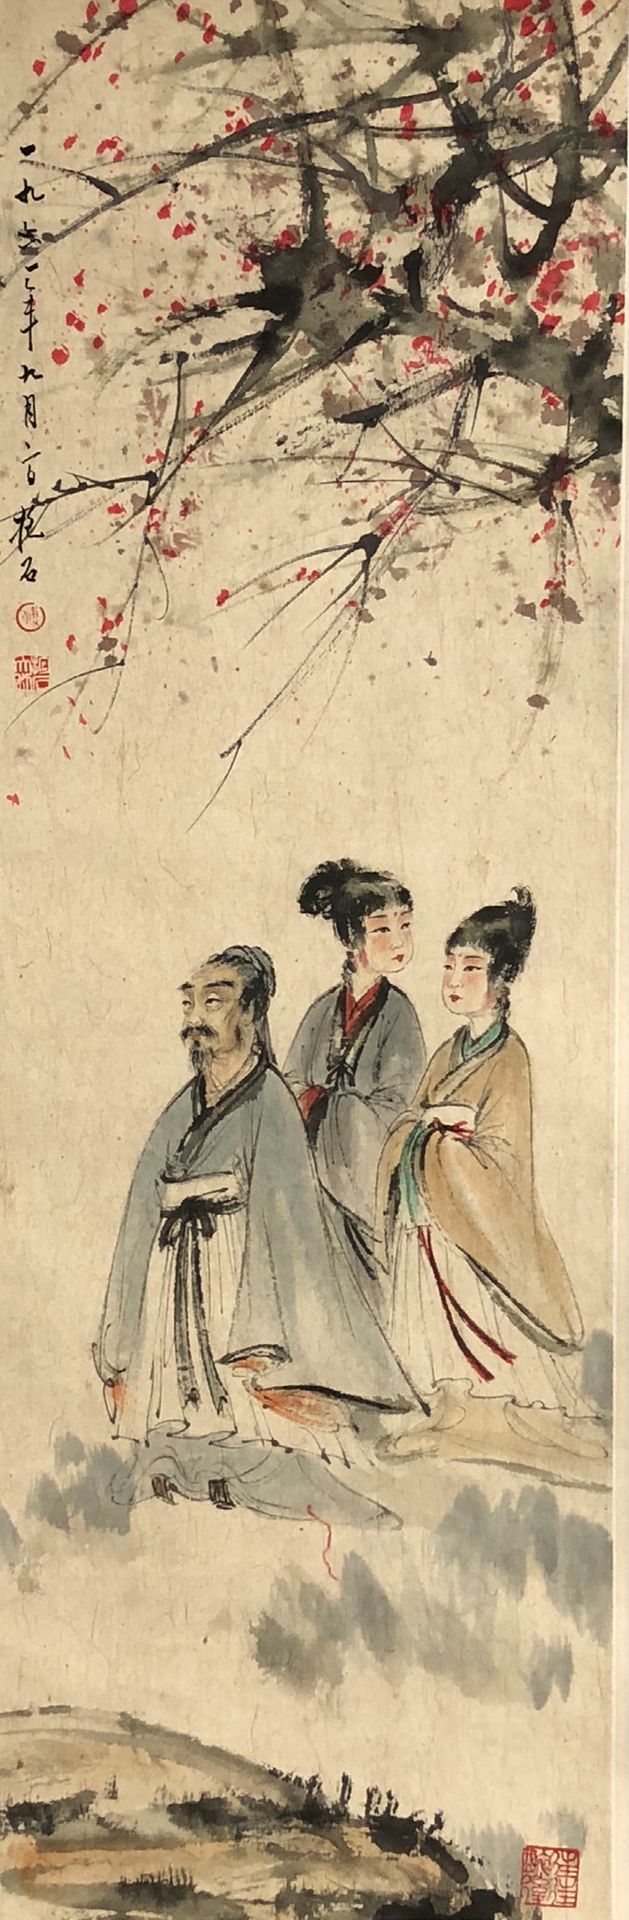 CHINE Gemälde auf einer Rolle mit Tusche und Farben, das drei Figuren darstellt